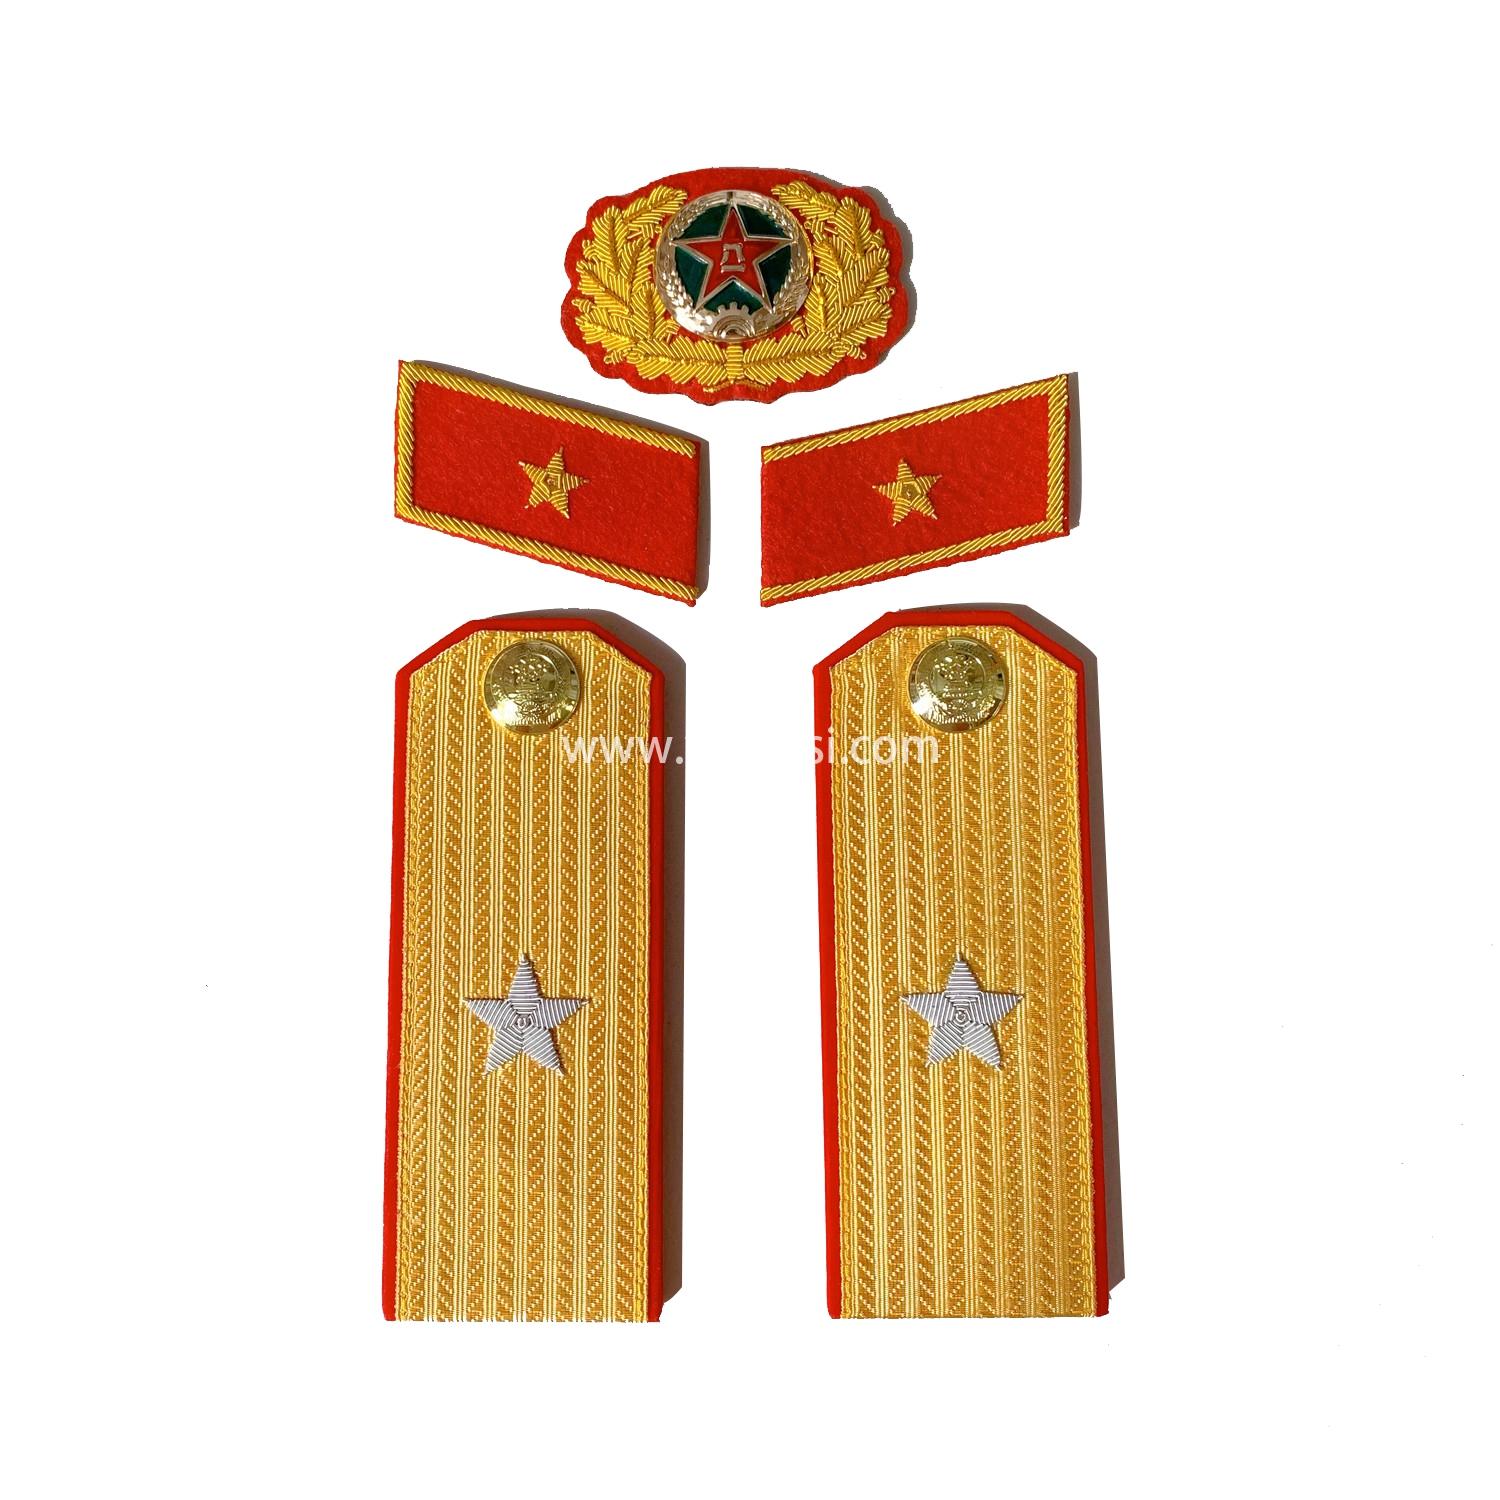 印度金属丝手工刺绣苏联少将套装满底金正红边55式常服五星徽章松枝纪念章